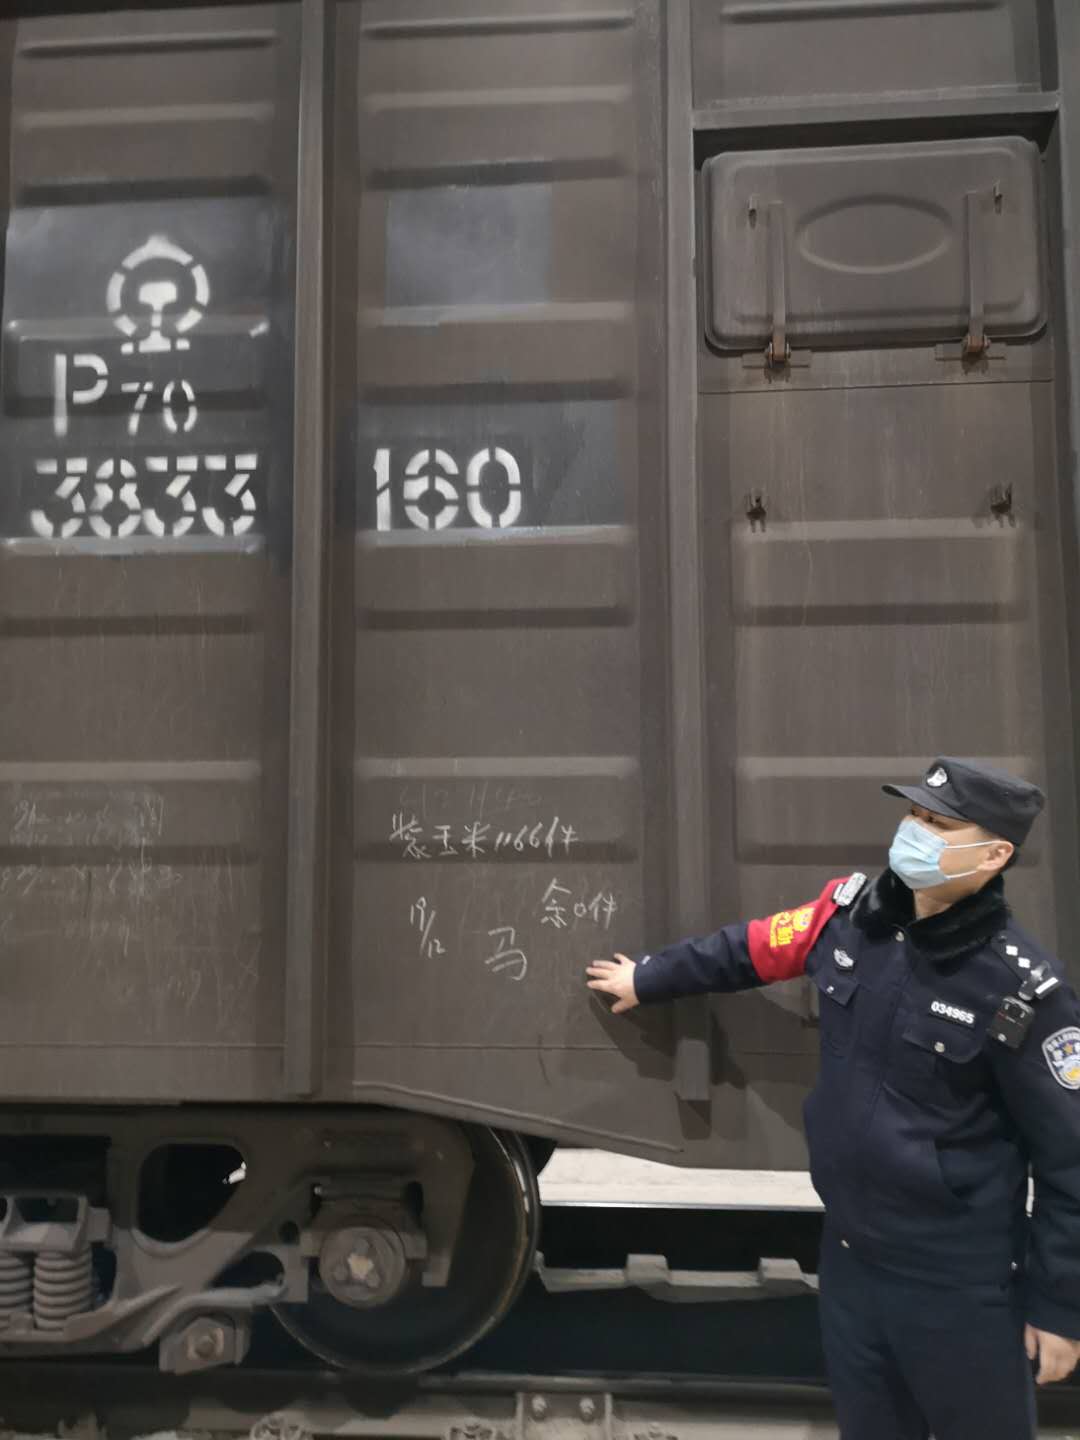 沈阳铁路公安局锦州公安处积极做好防疫物资铁路运输安全保障工作